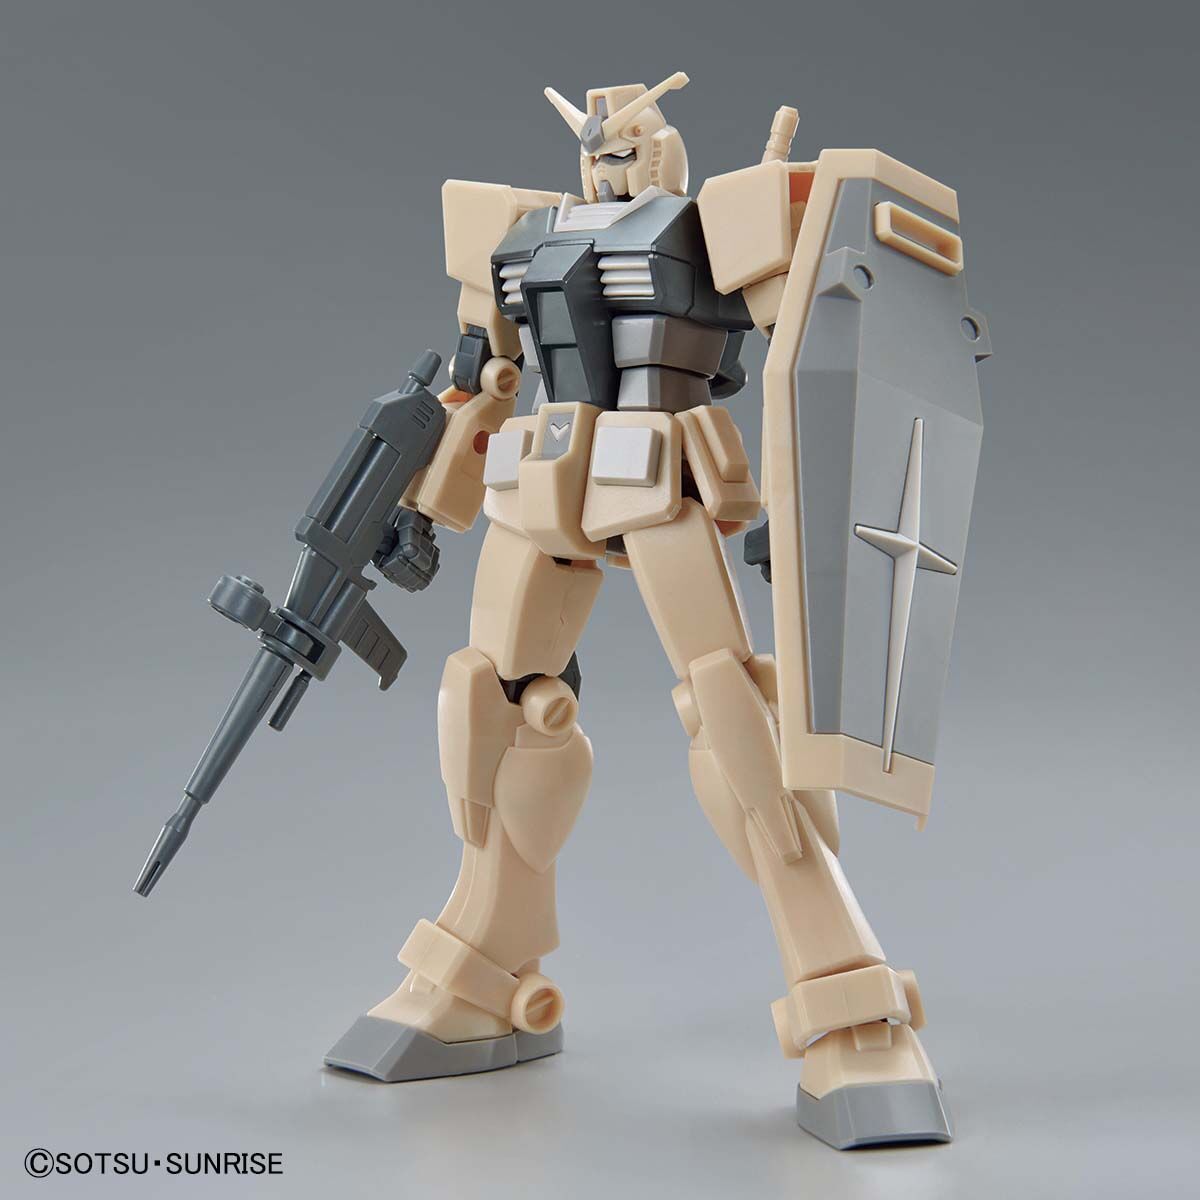 EG 1/144 RX-78-2 Gundam(Eco-Pla Classic Color)